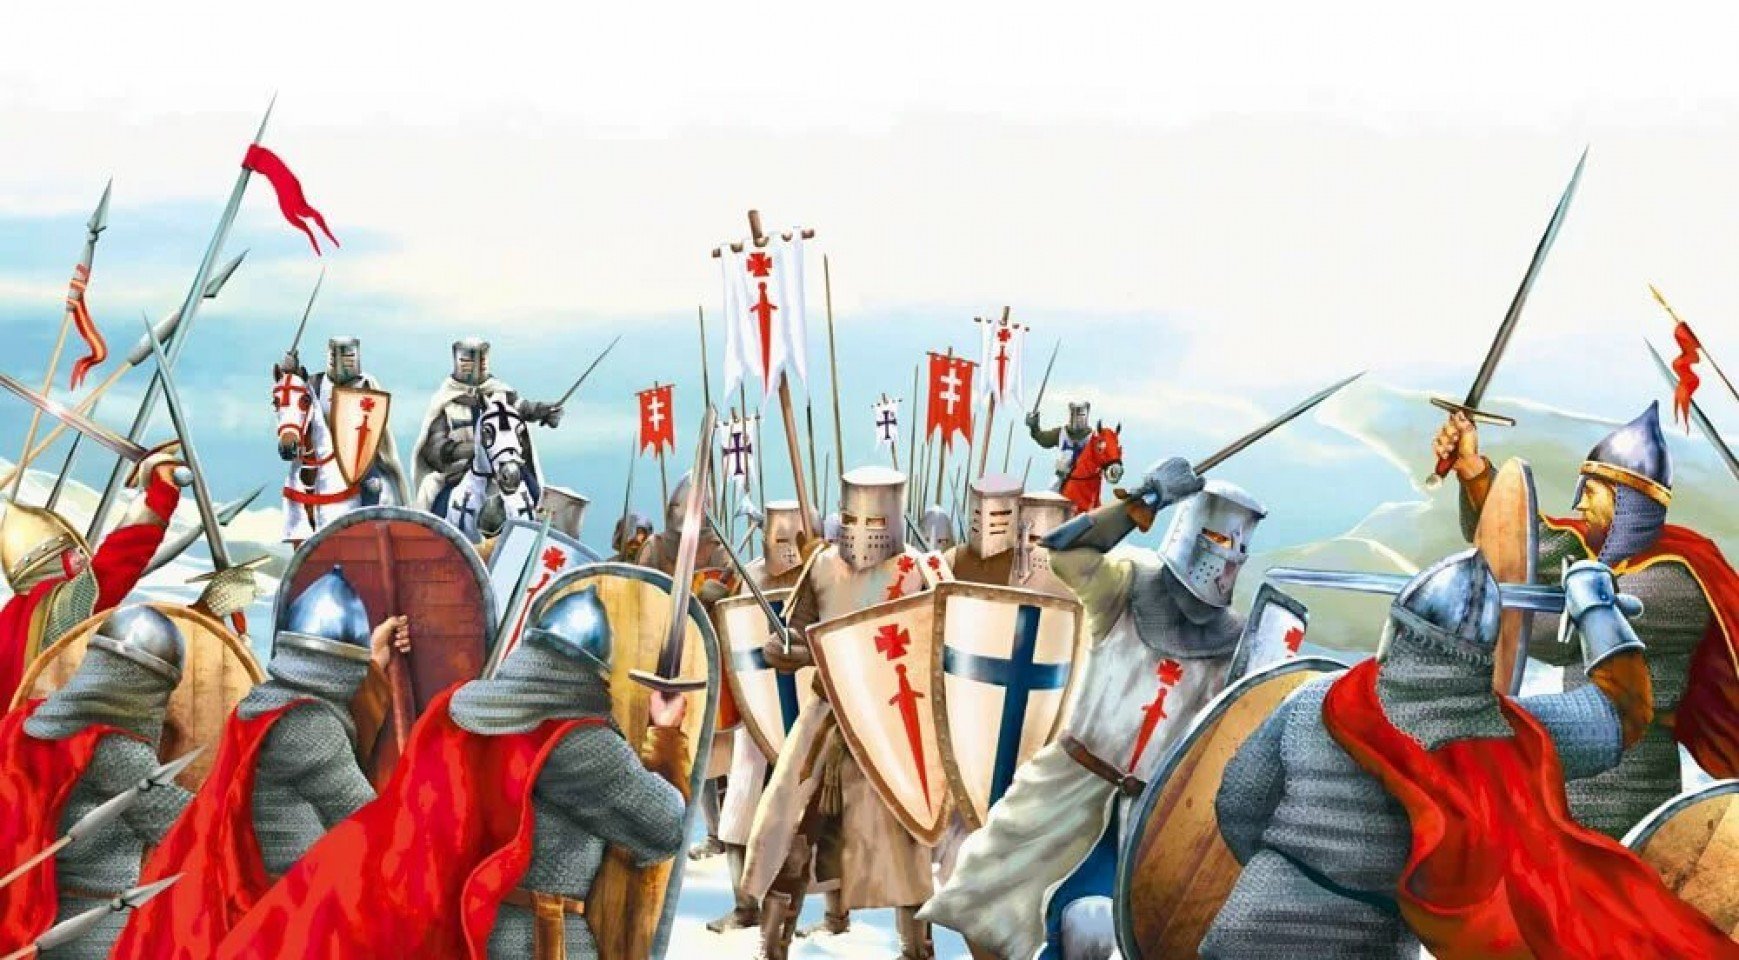 Невское сражение и ледовое побоище. Битва на Чудском озере 1242 год Ледовое побоище.